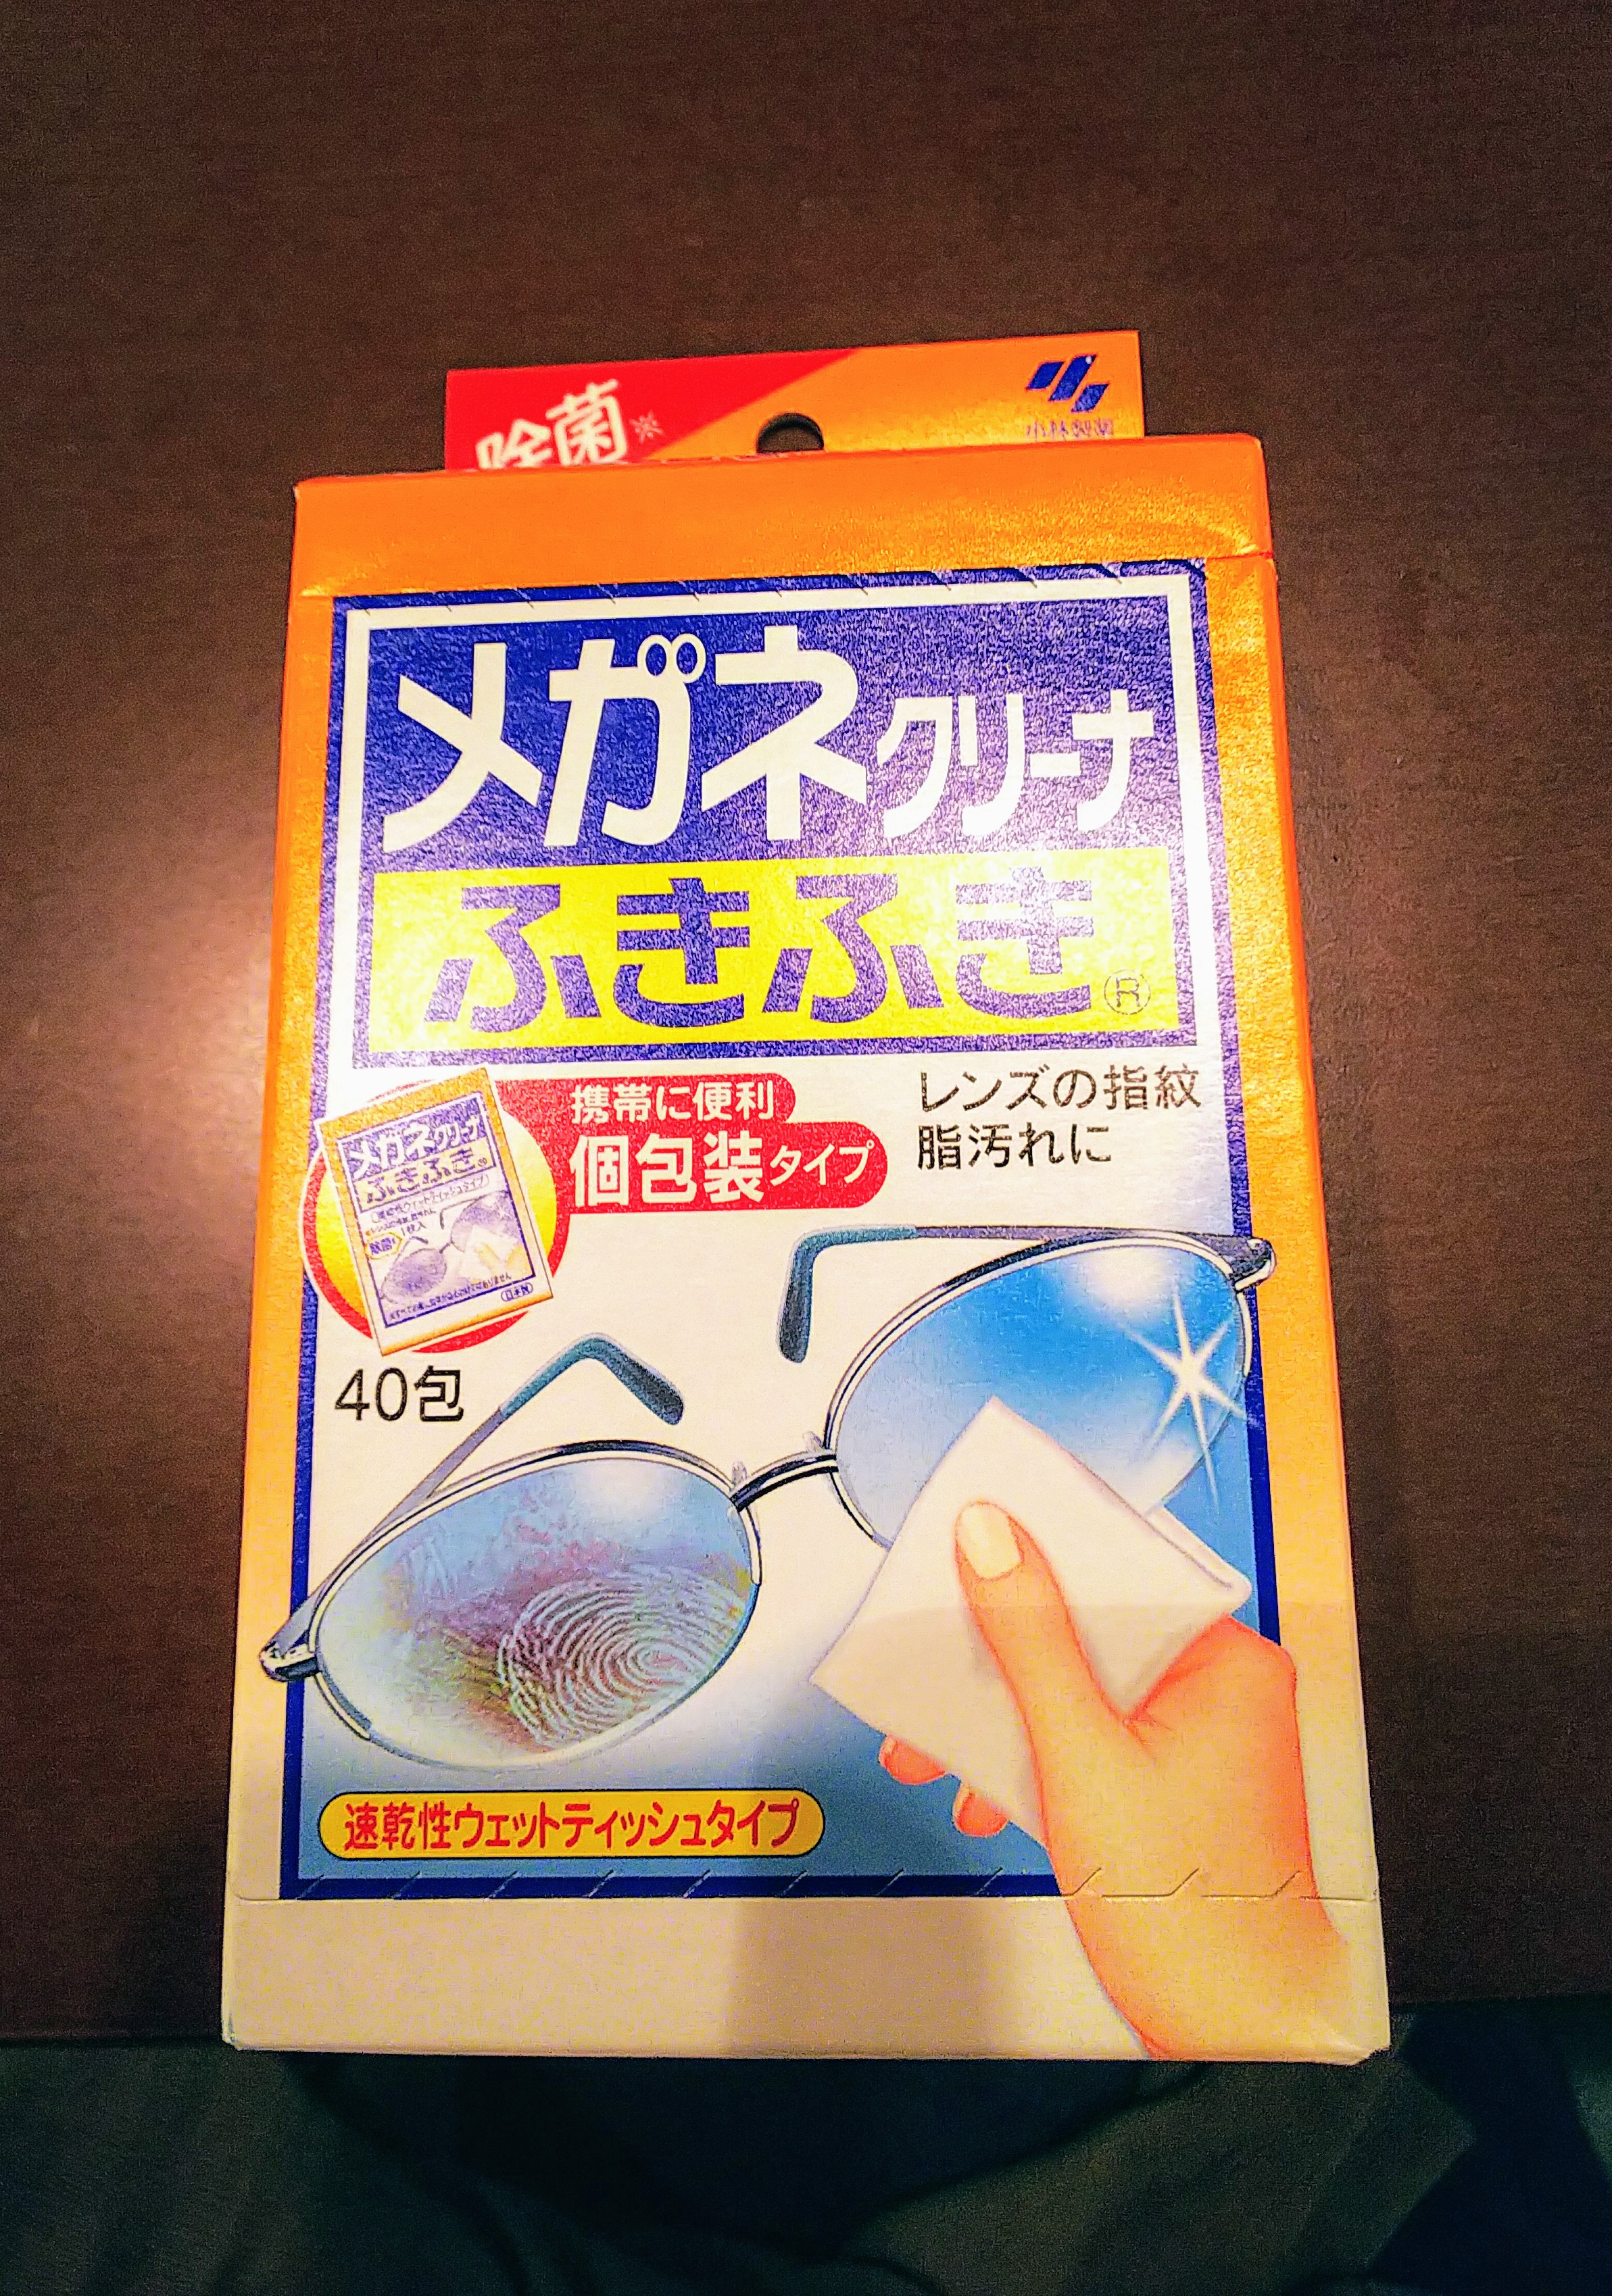 【小林製薬】メガネクリーナーふきふきお徳用 40包入 の大容量